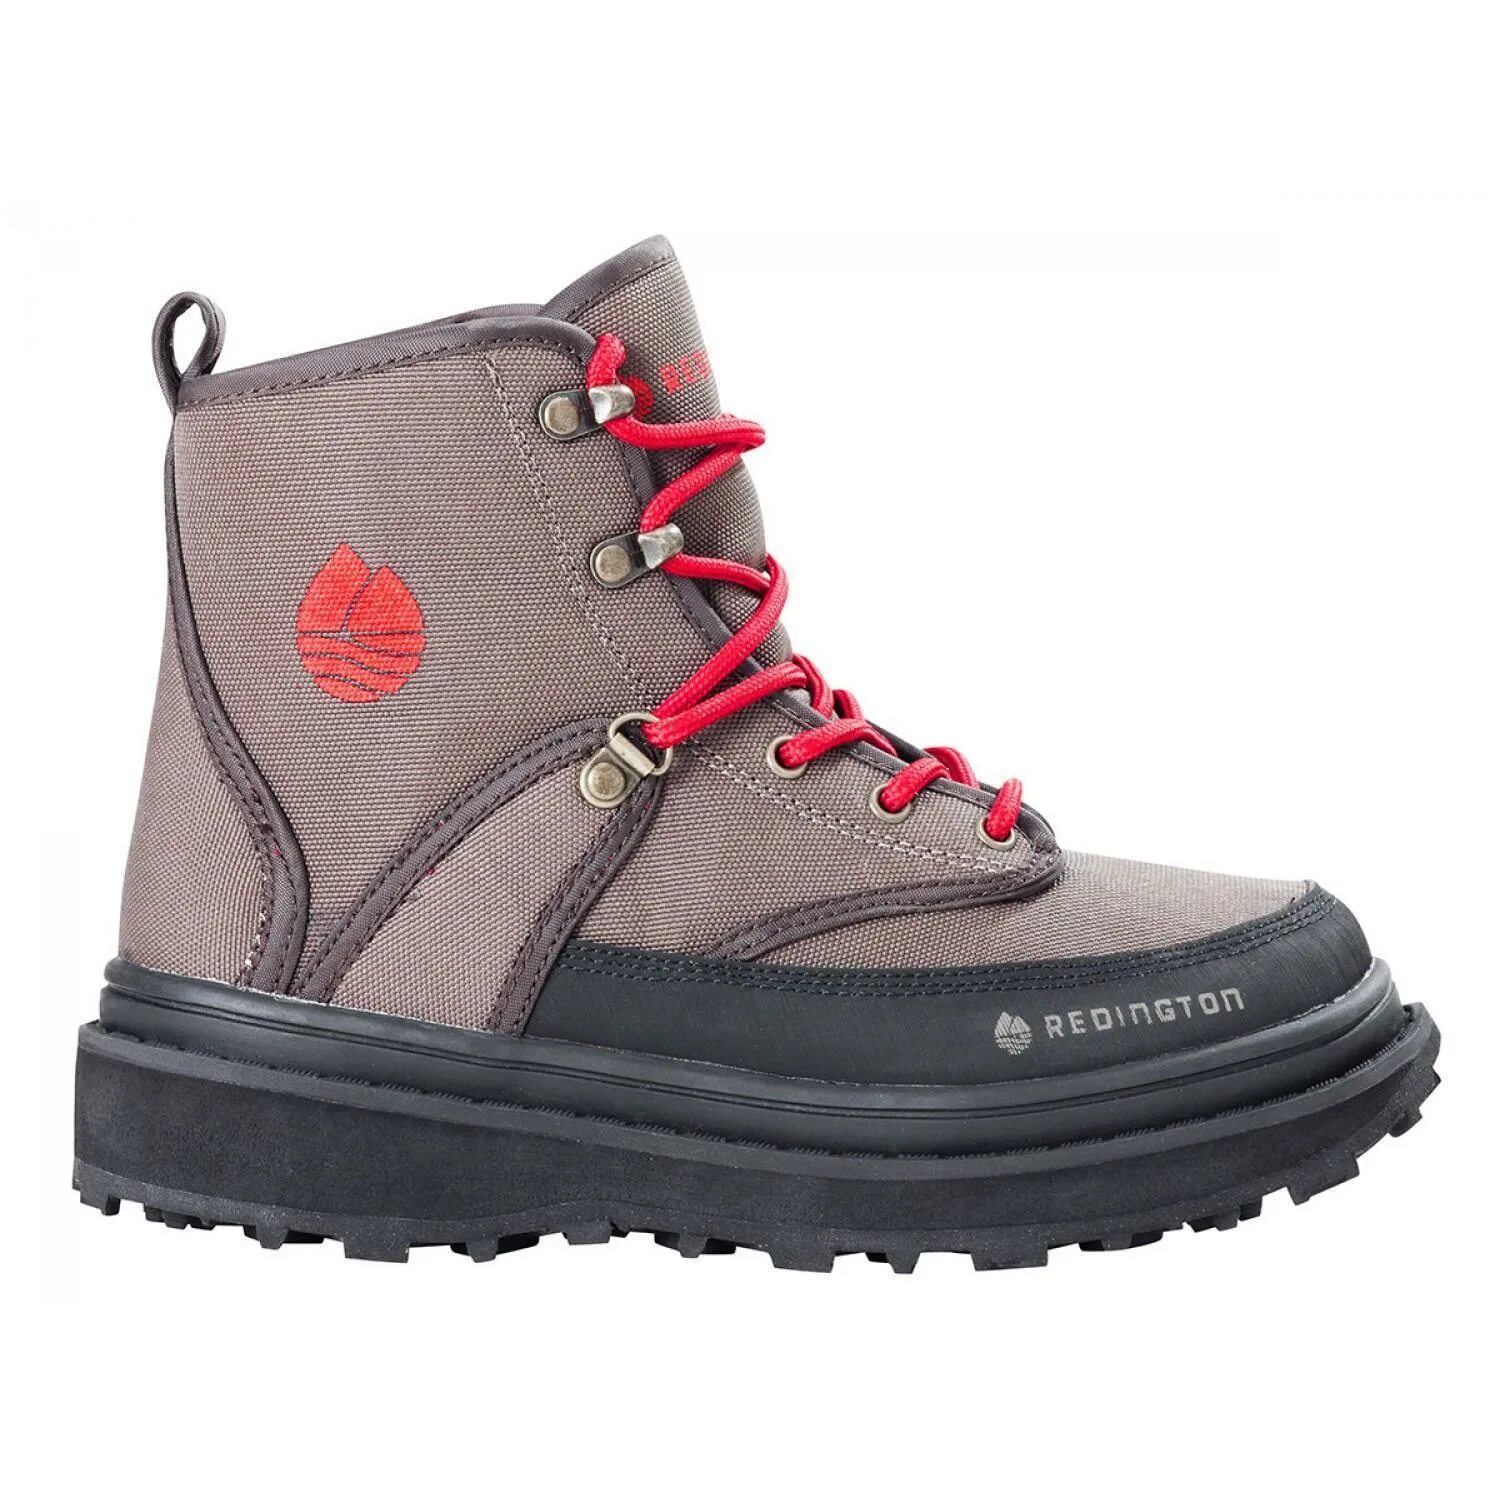 Ботинки для вейдерсов. Redington ботинки. Ботинки Redington Skagit River Boot Sticky Rubber, Bark/Boulder. Забродные ботинки Simms g4. Обувь Redington забродные ботинки для рыбалки.